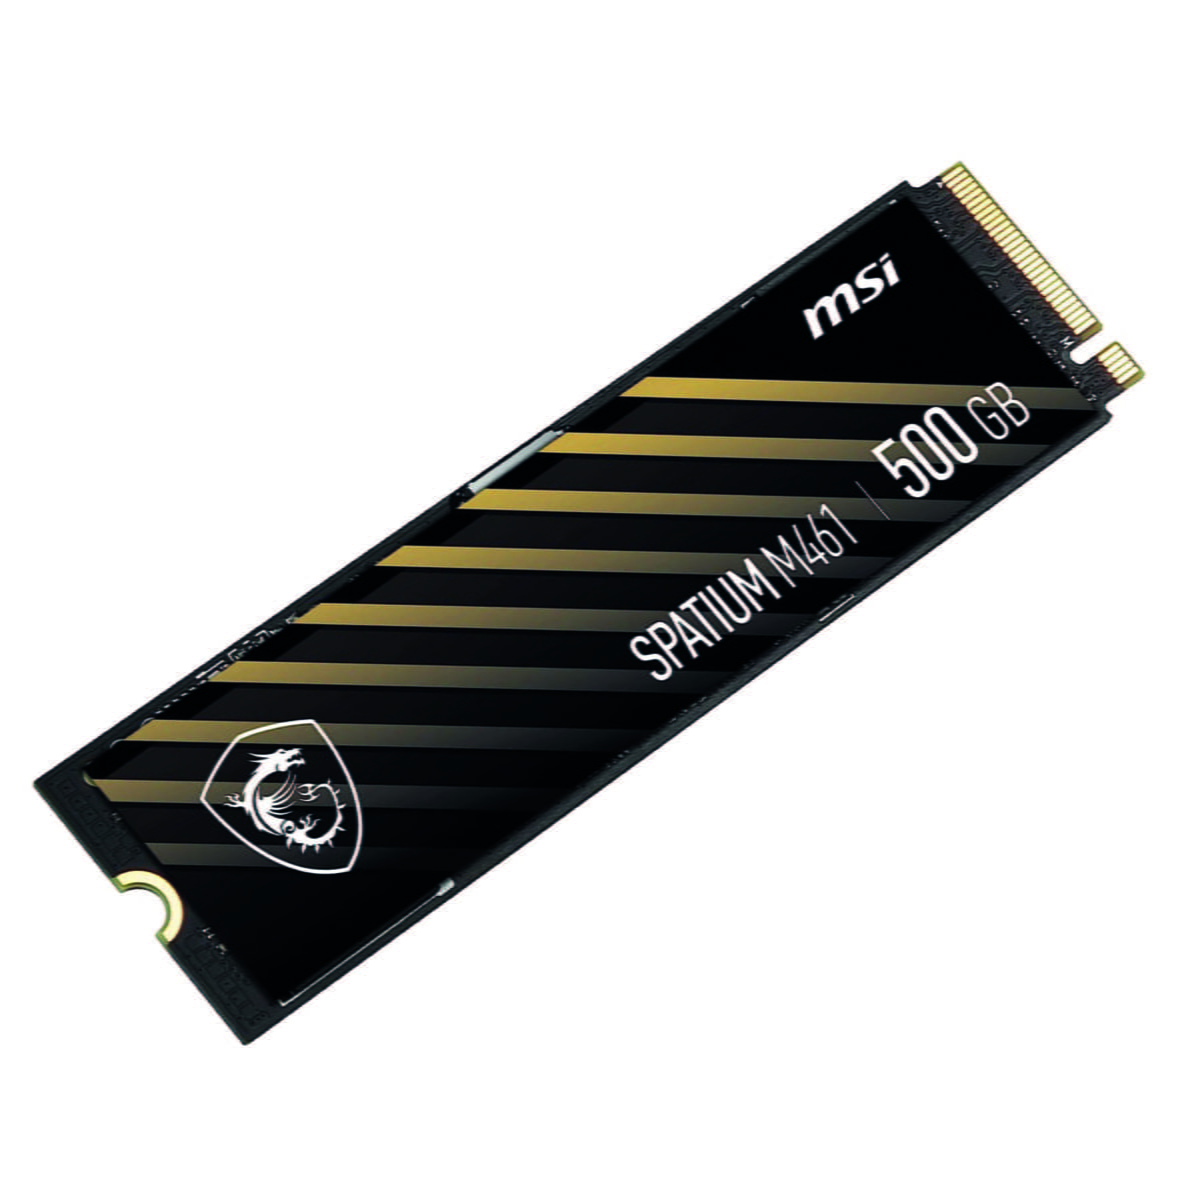 MSI SPATIUM M461 PCIe 4.0 NVMe M.2 500GB Internal SSD